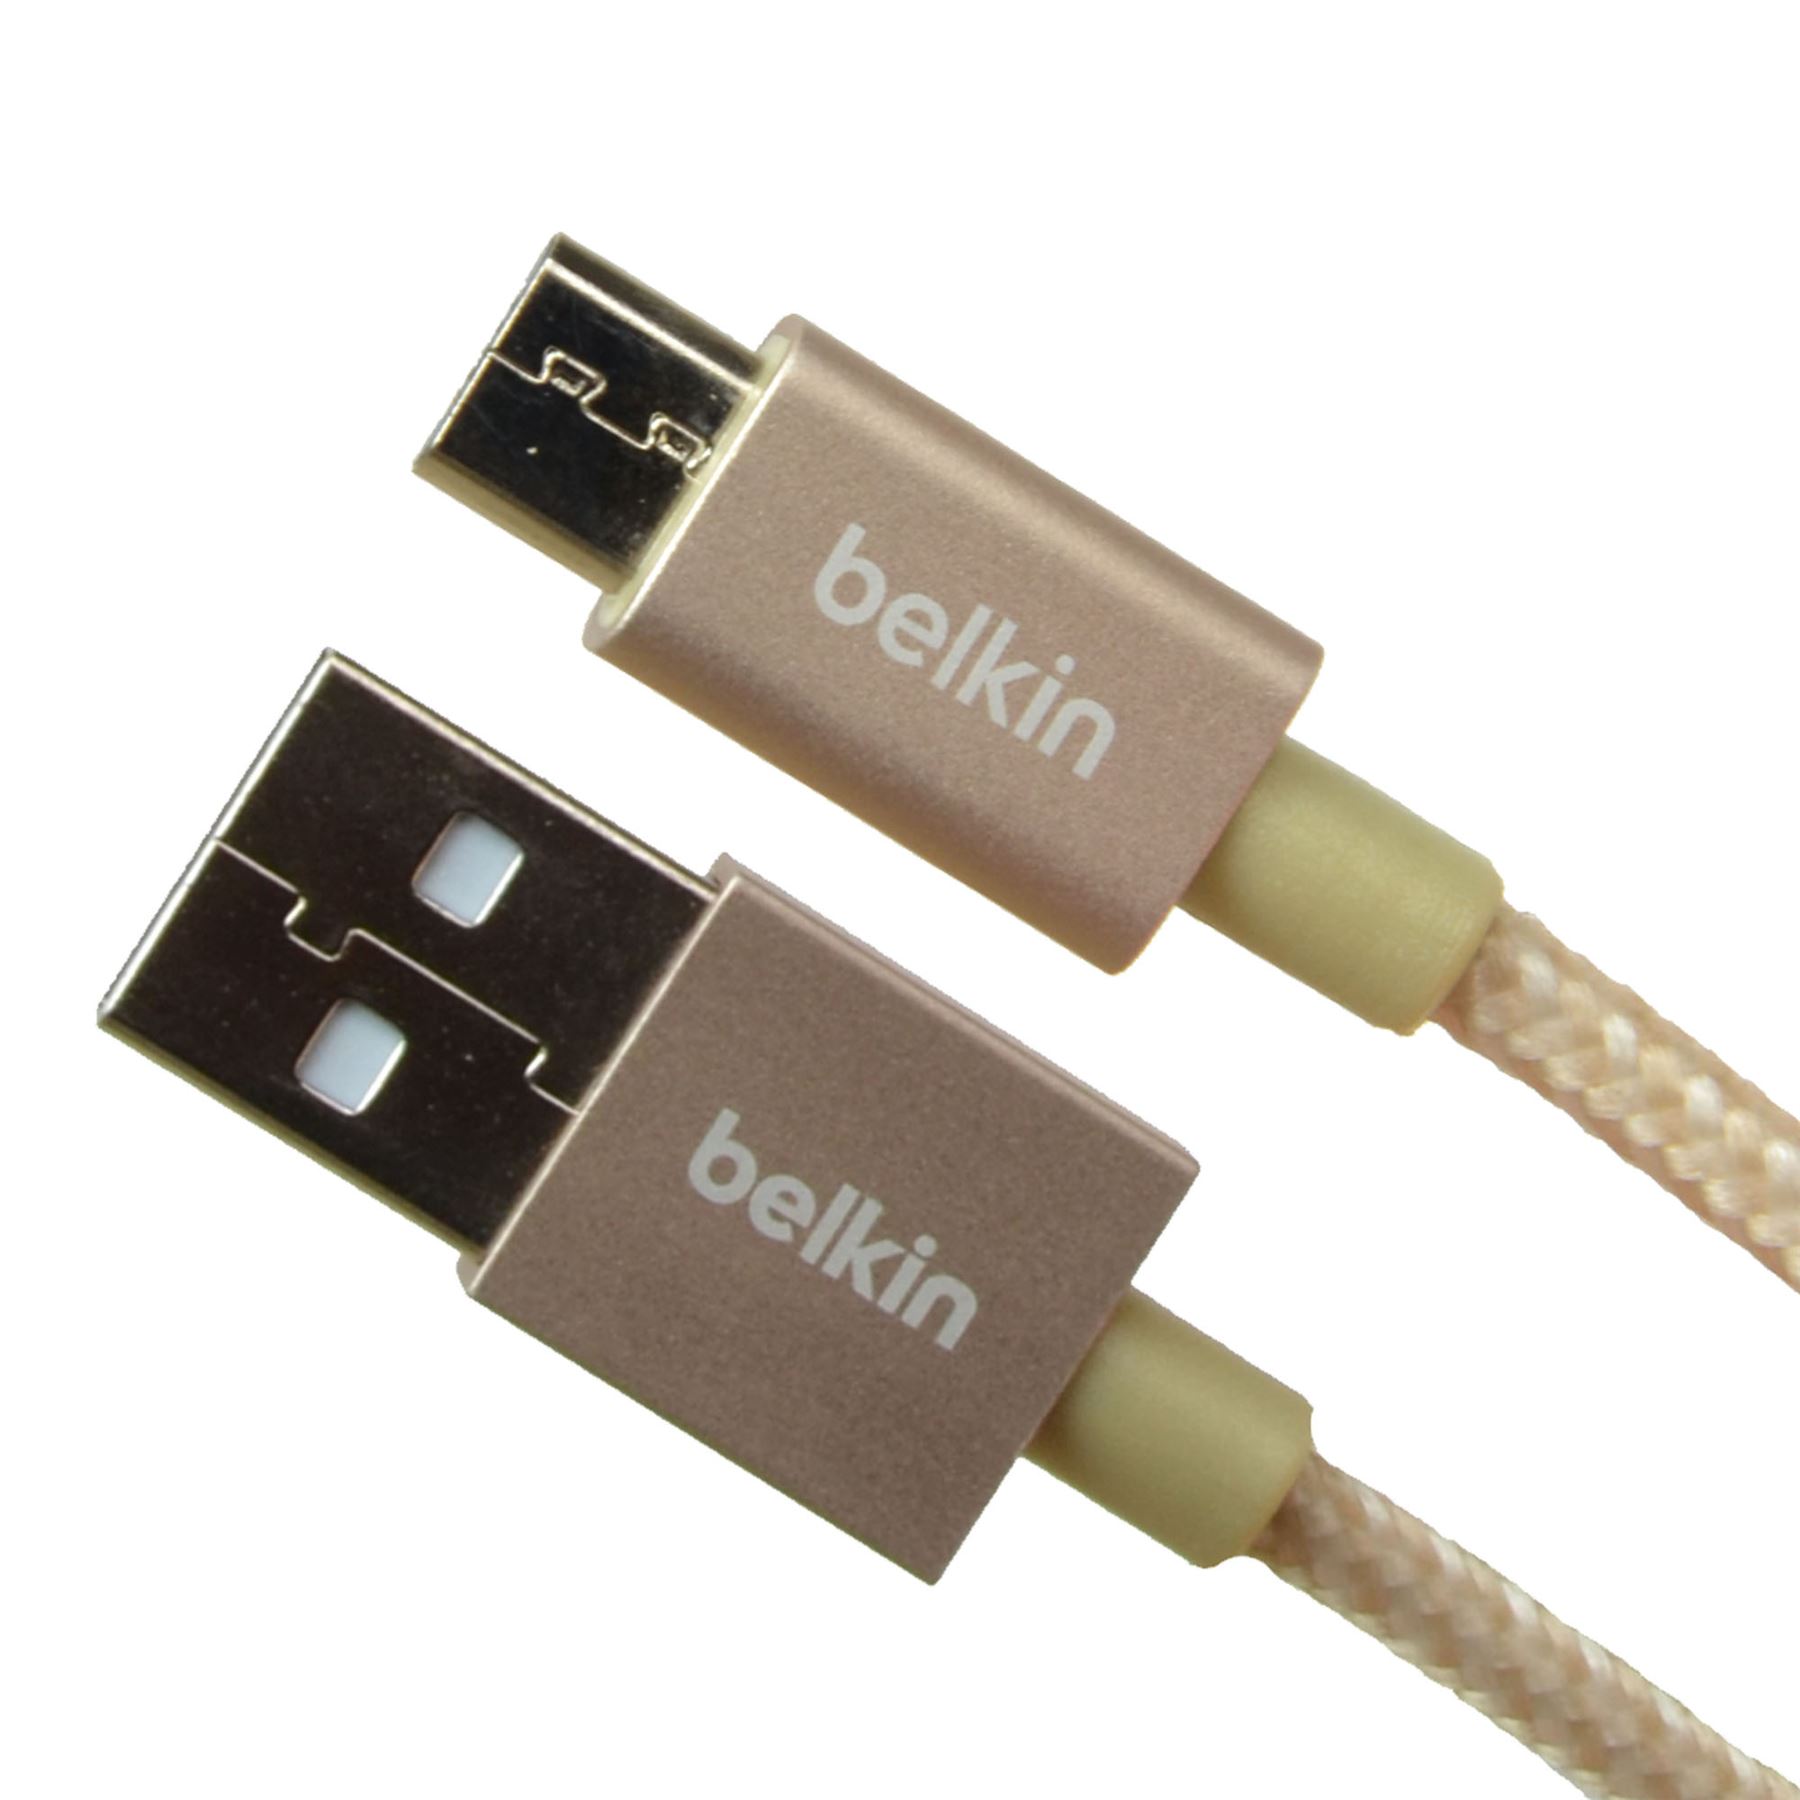 Cáp Sạc Micro USB cho Samsung Belkin F2CU021bt04GLD (Vàng) 1.2m_2